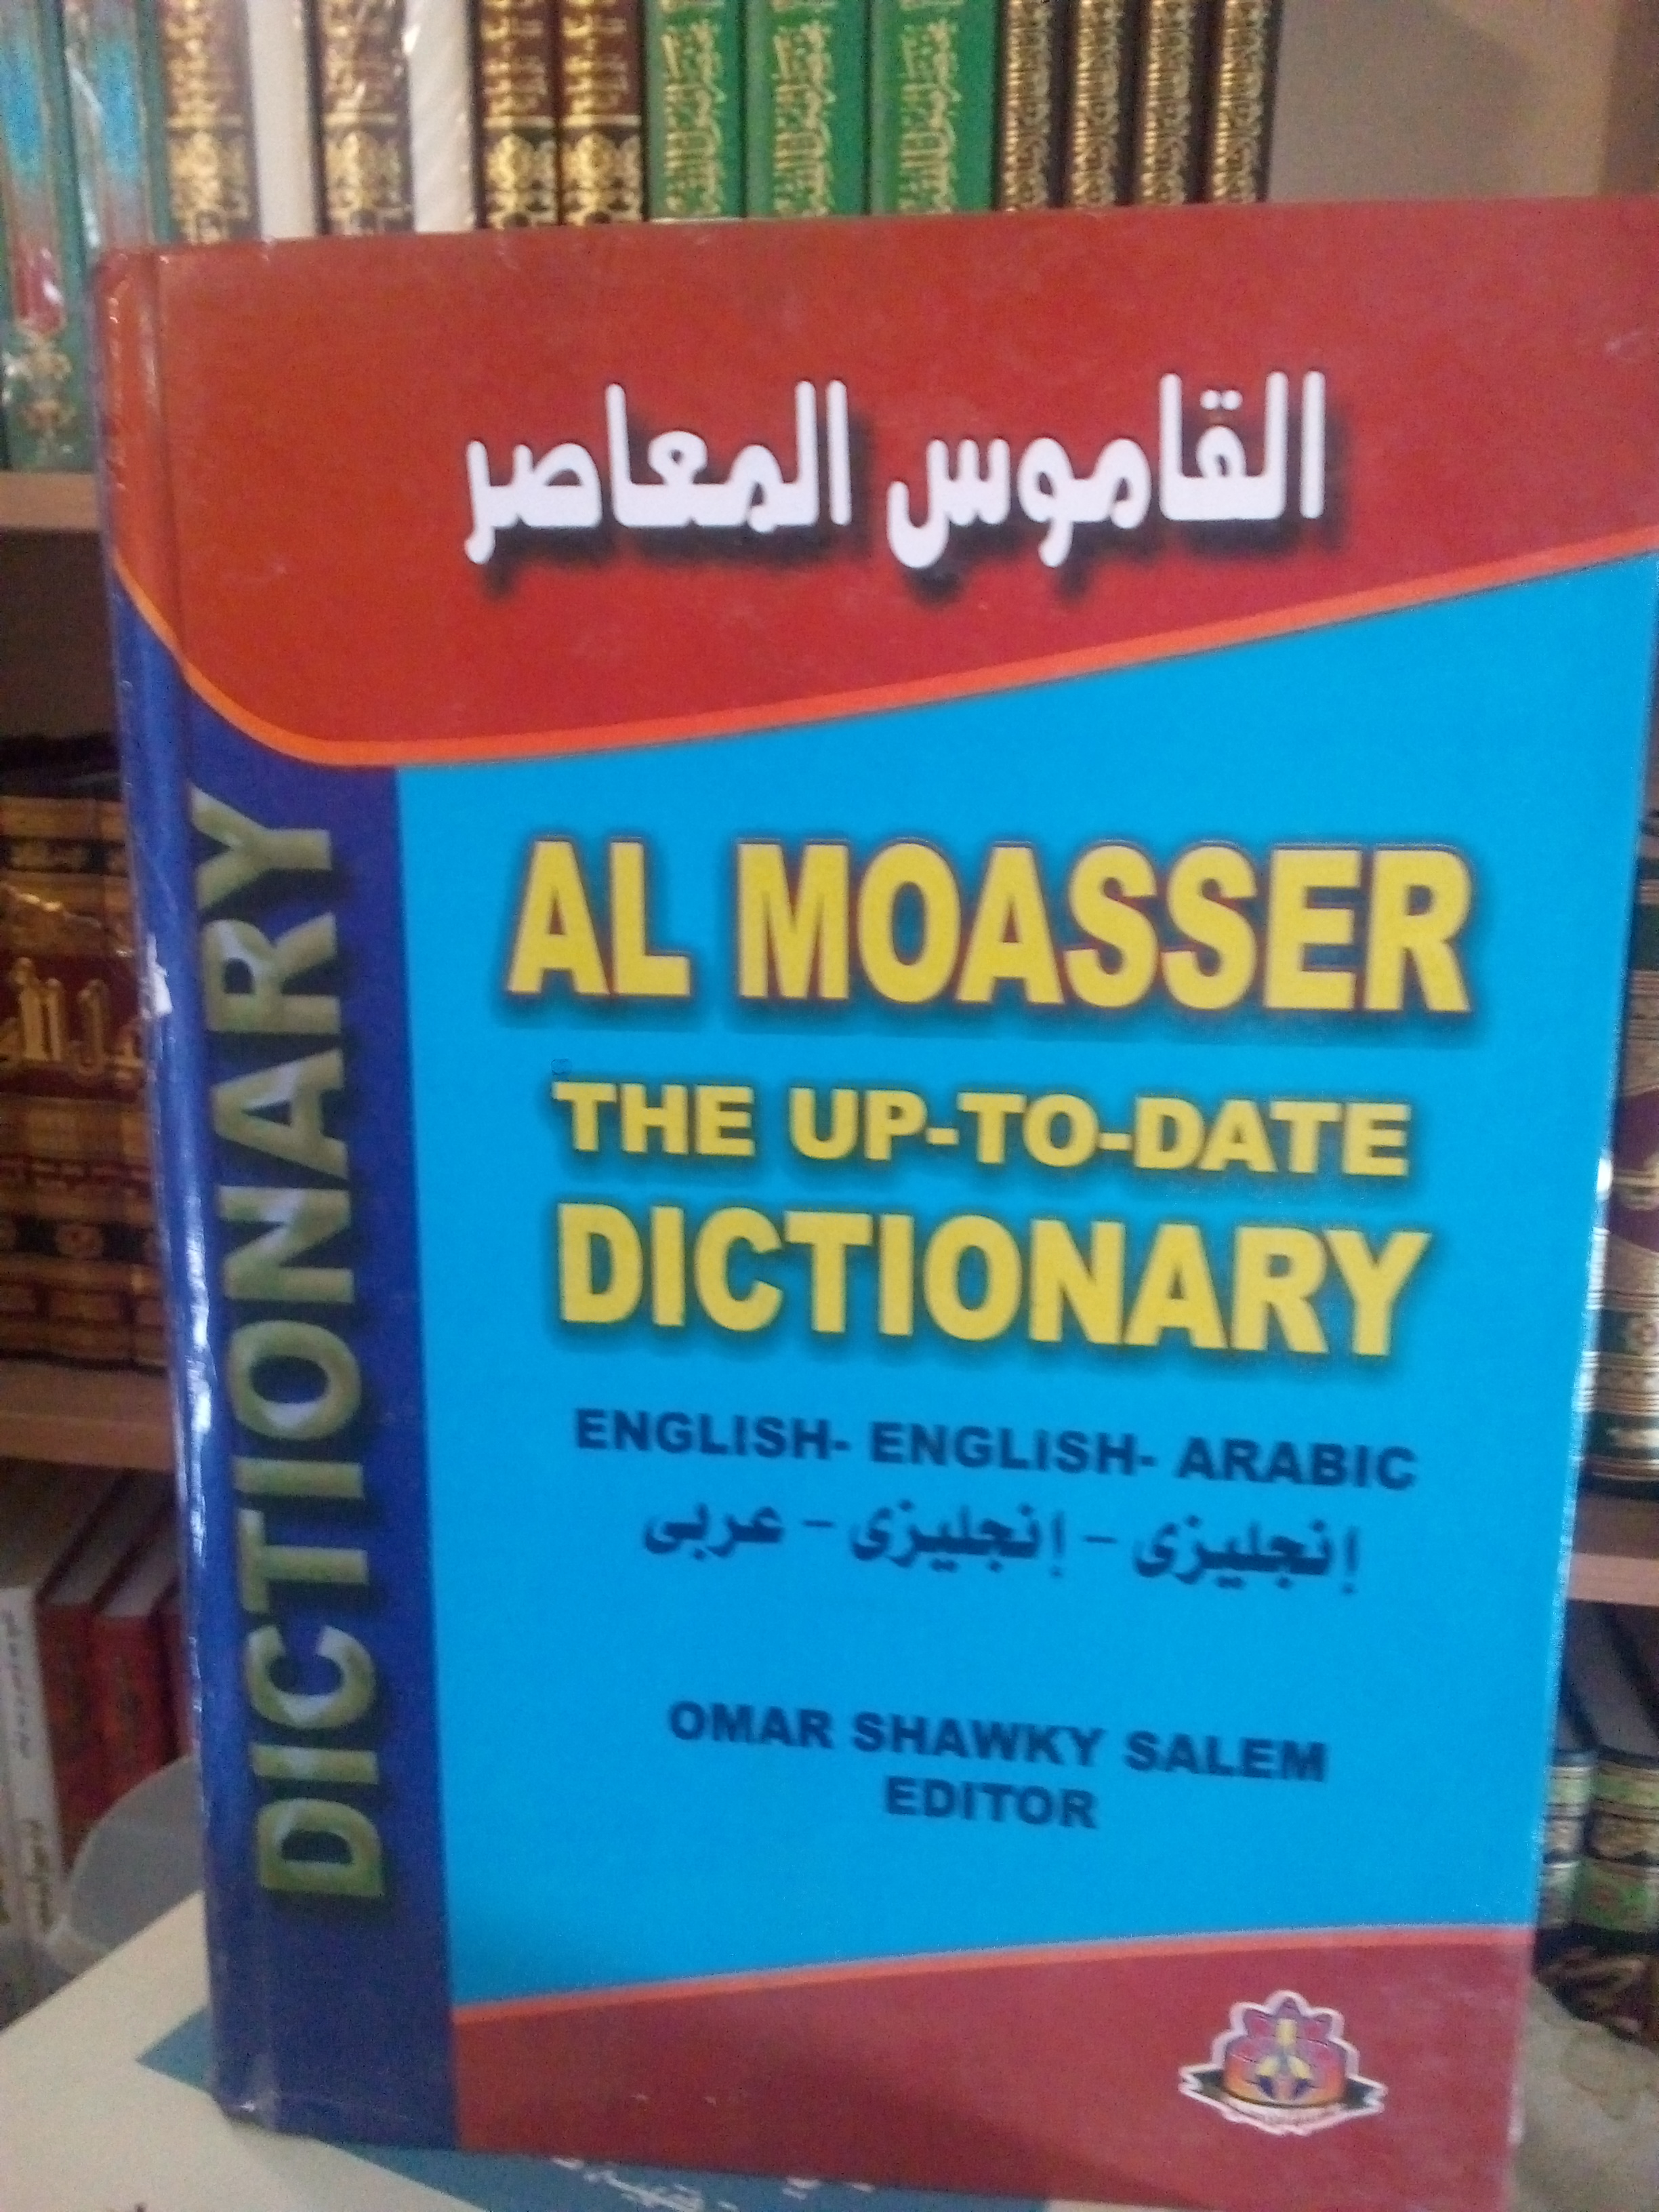 القاموس المعاصر (إجليزي -إنجليزي -عربي)